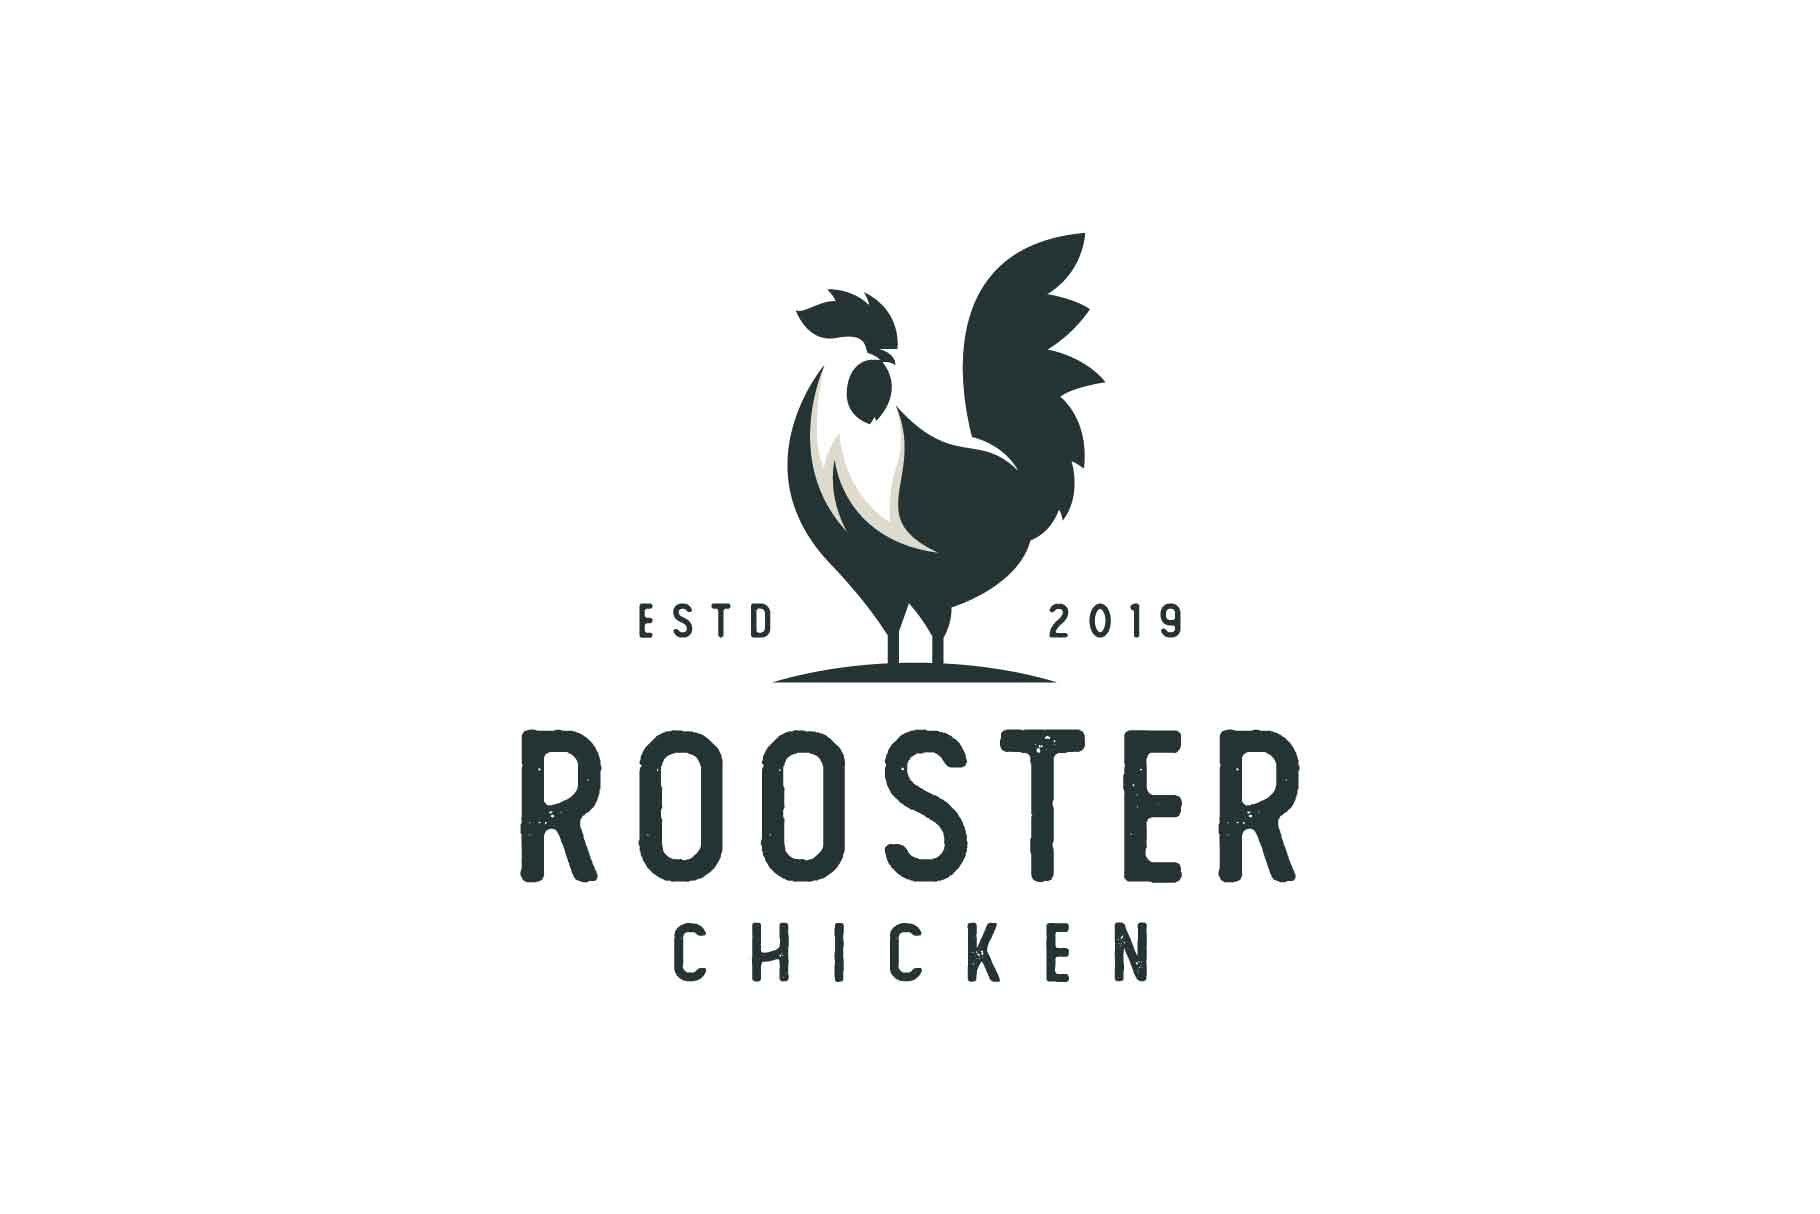 Rooster logo emblem cover image.